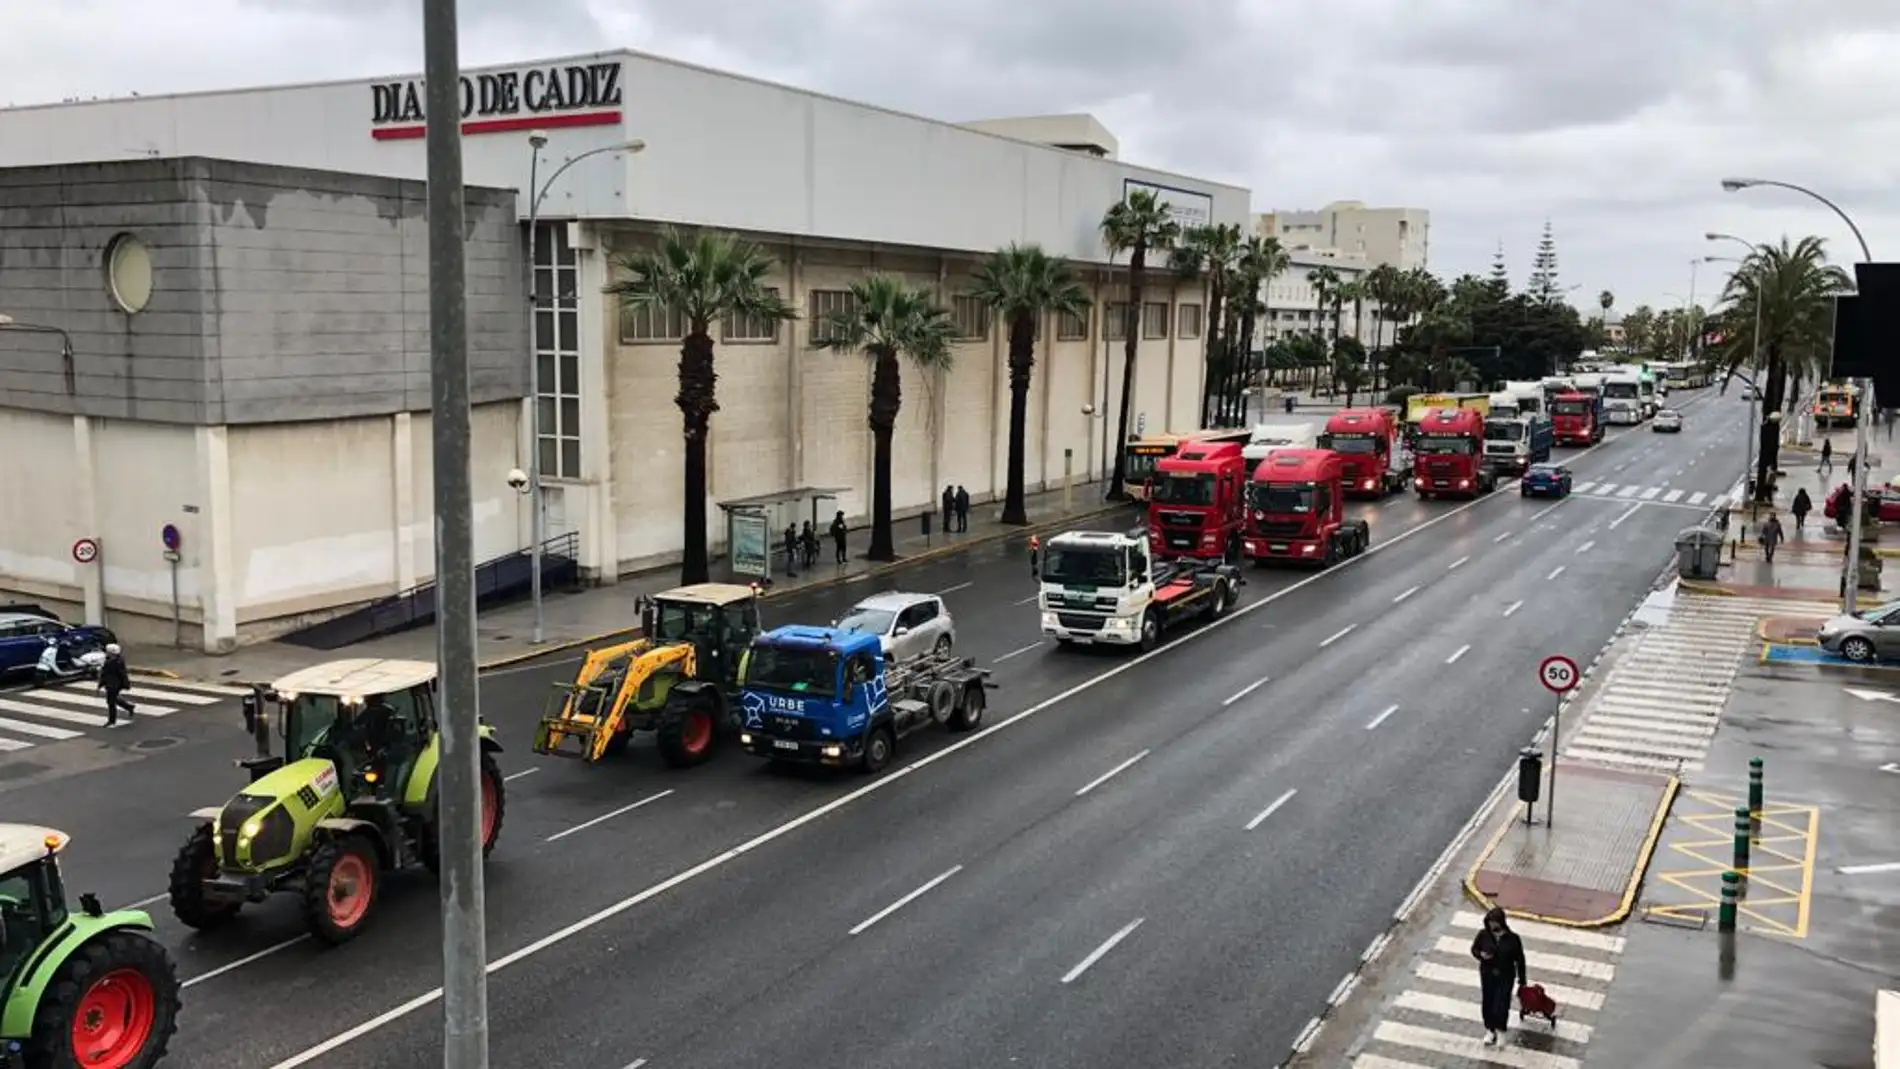 Imagen de la llegada de la caravana a Cádiz